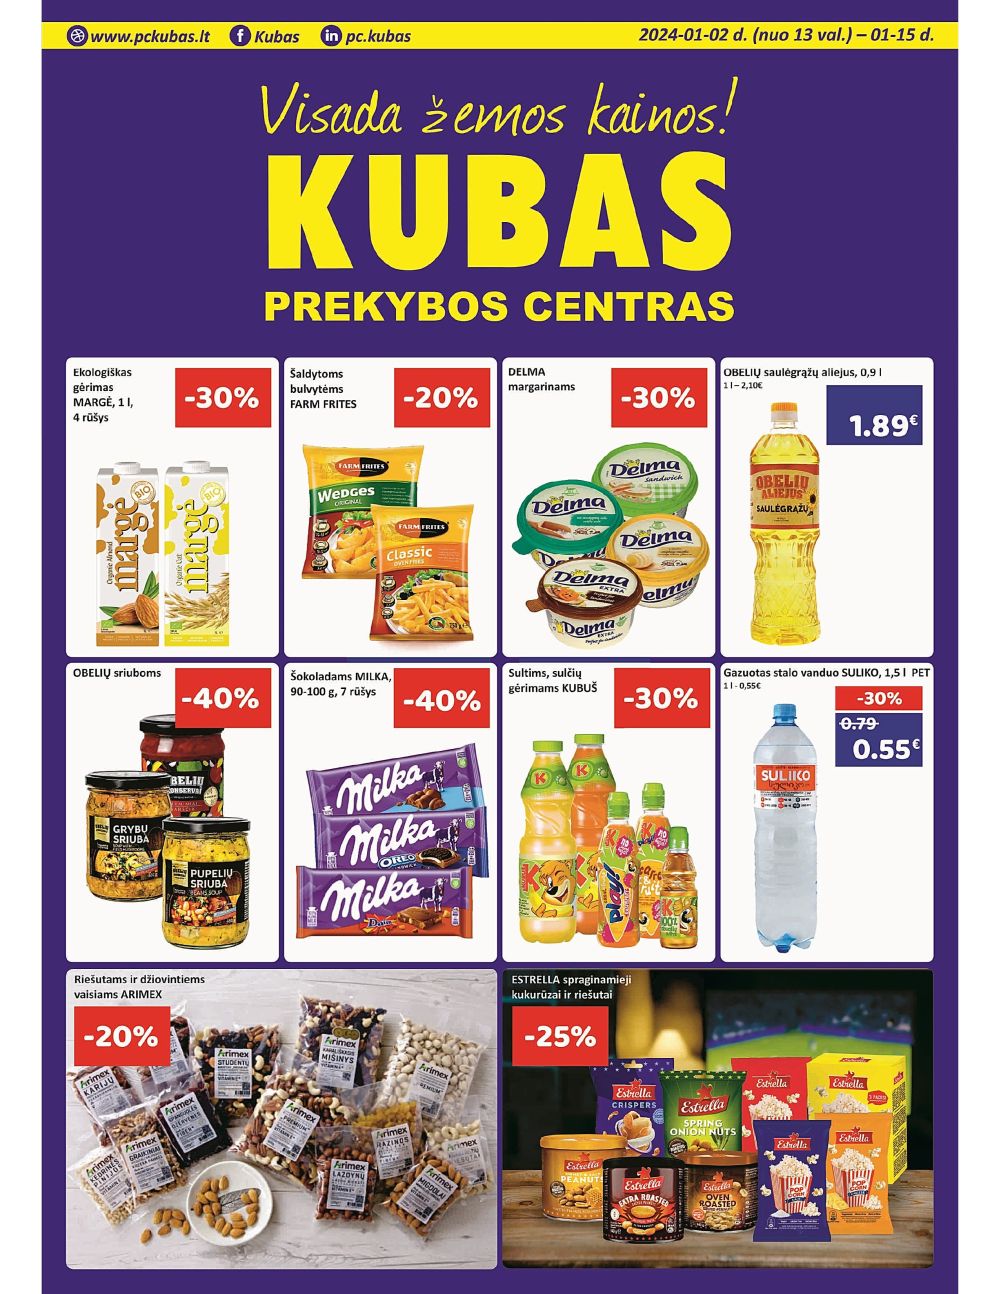 kubas - KUBAS (2024 01 02 - 2024 01 15) - page: 1